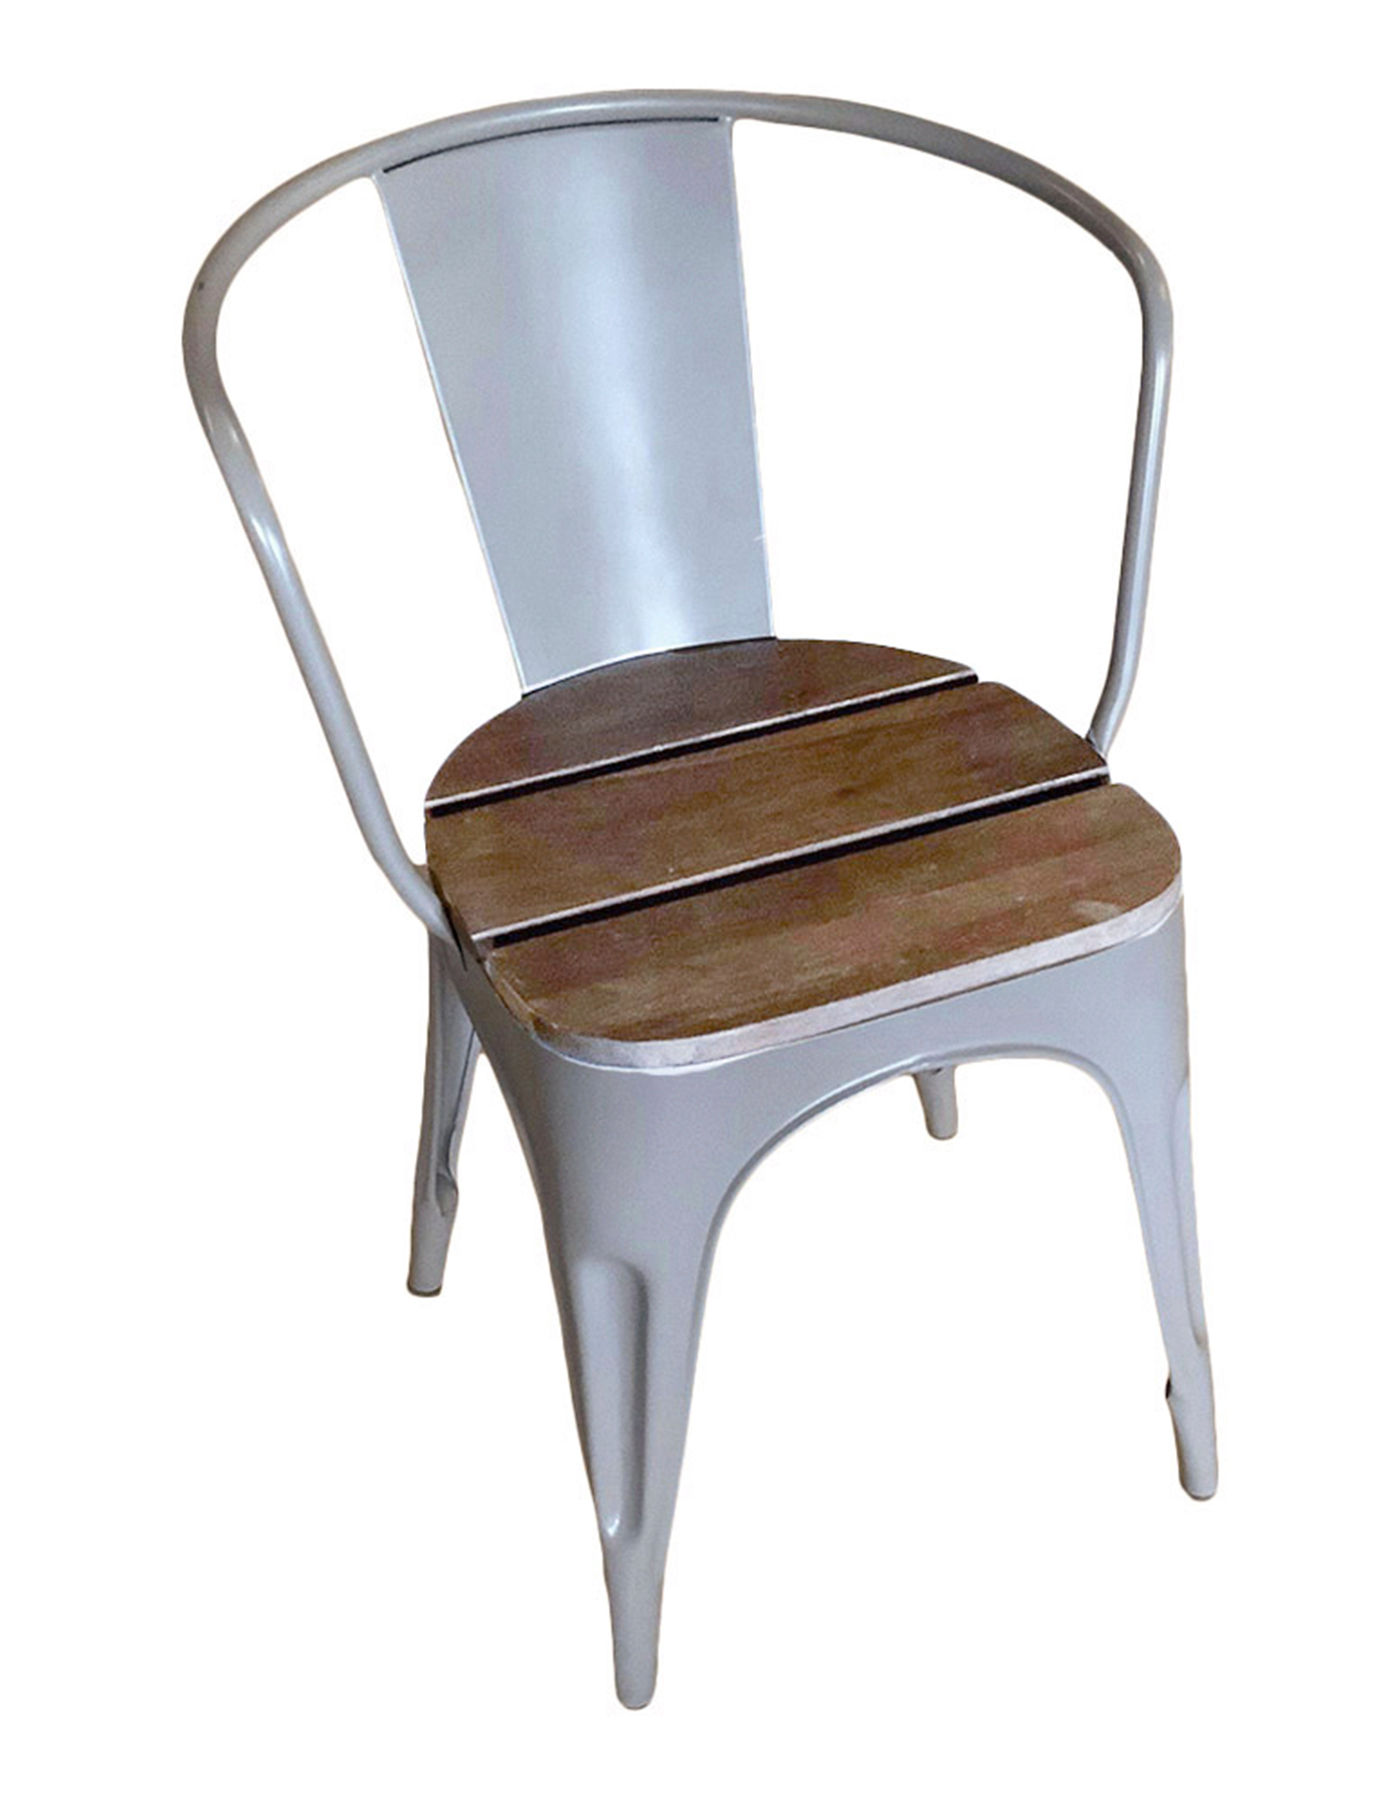 Sjælsø Nordic stol i jern/træ - grå 2 stk